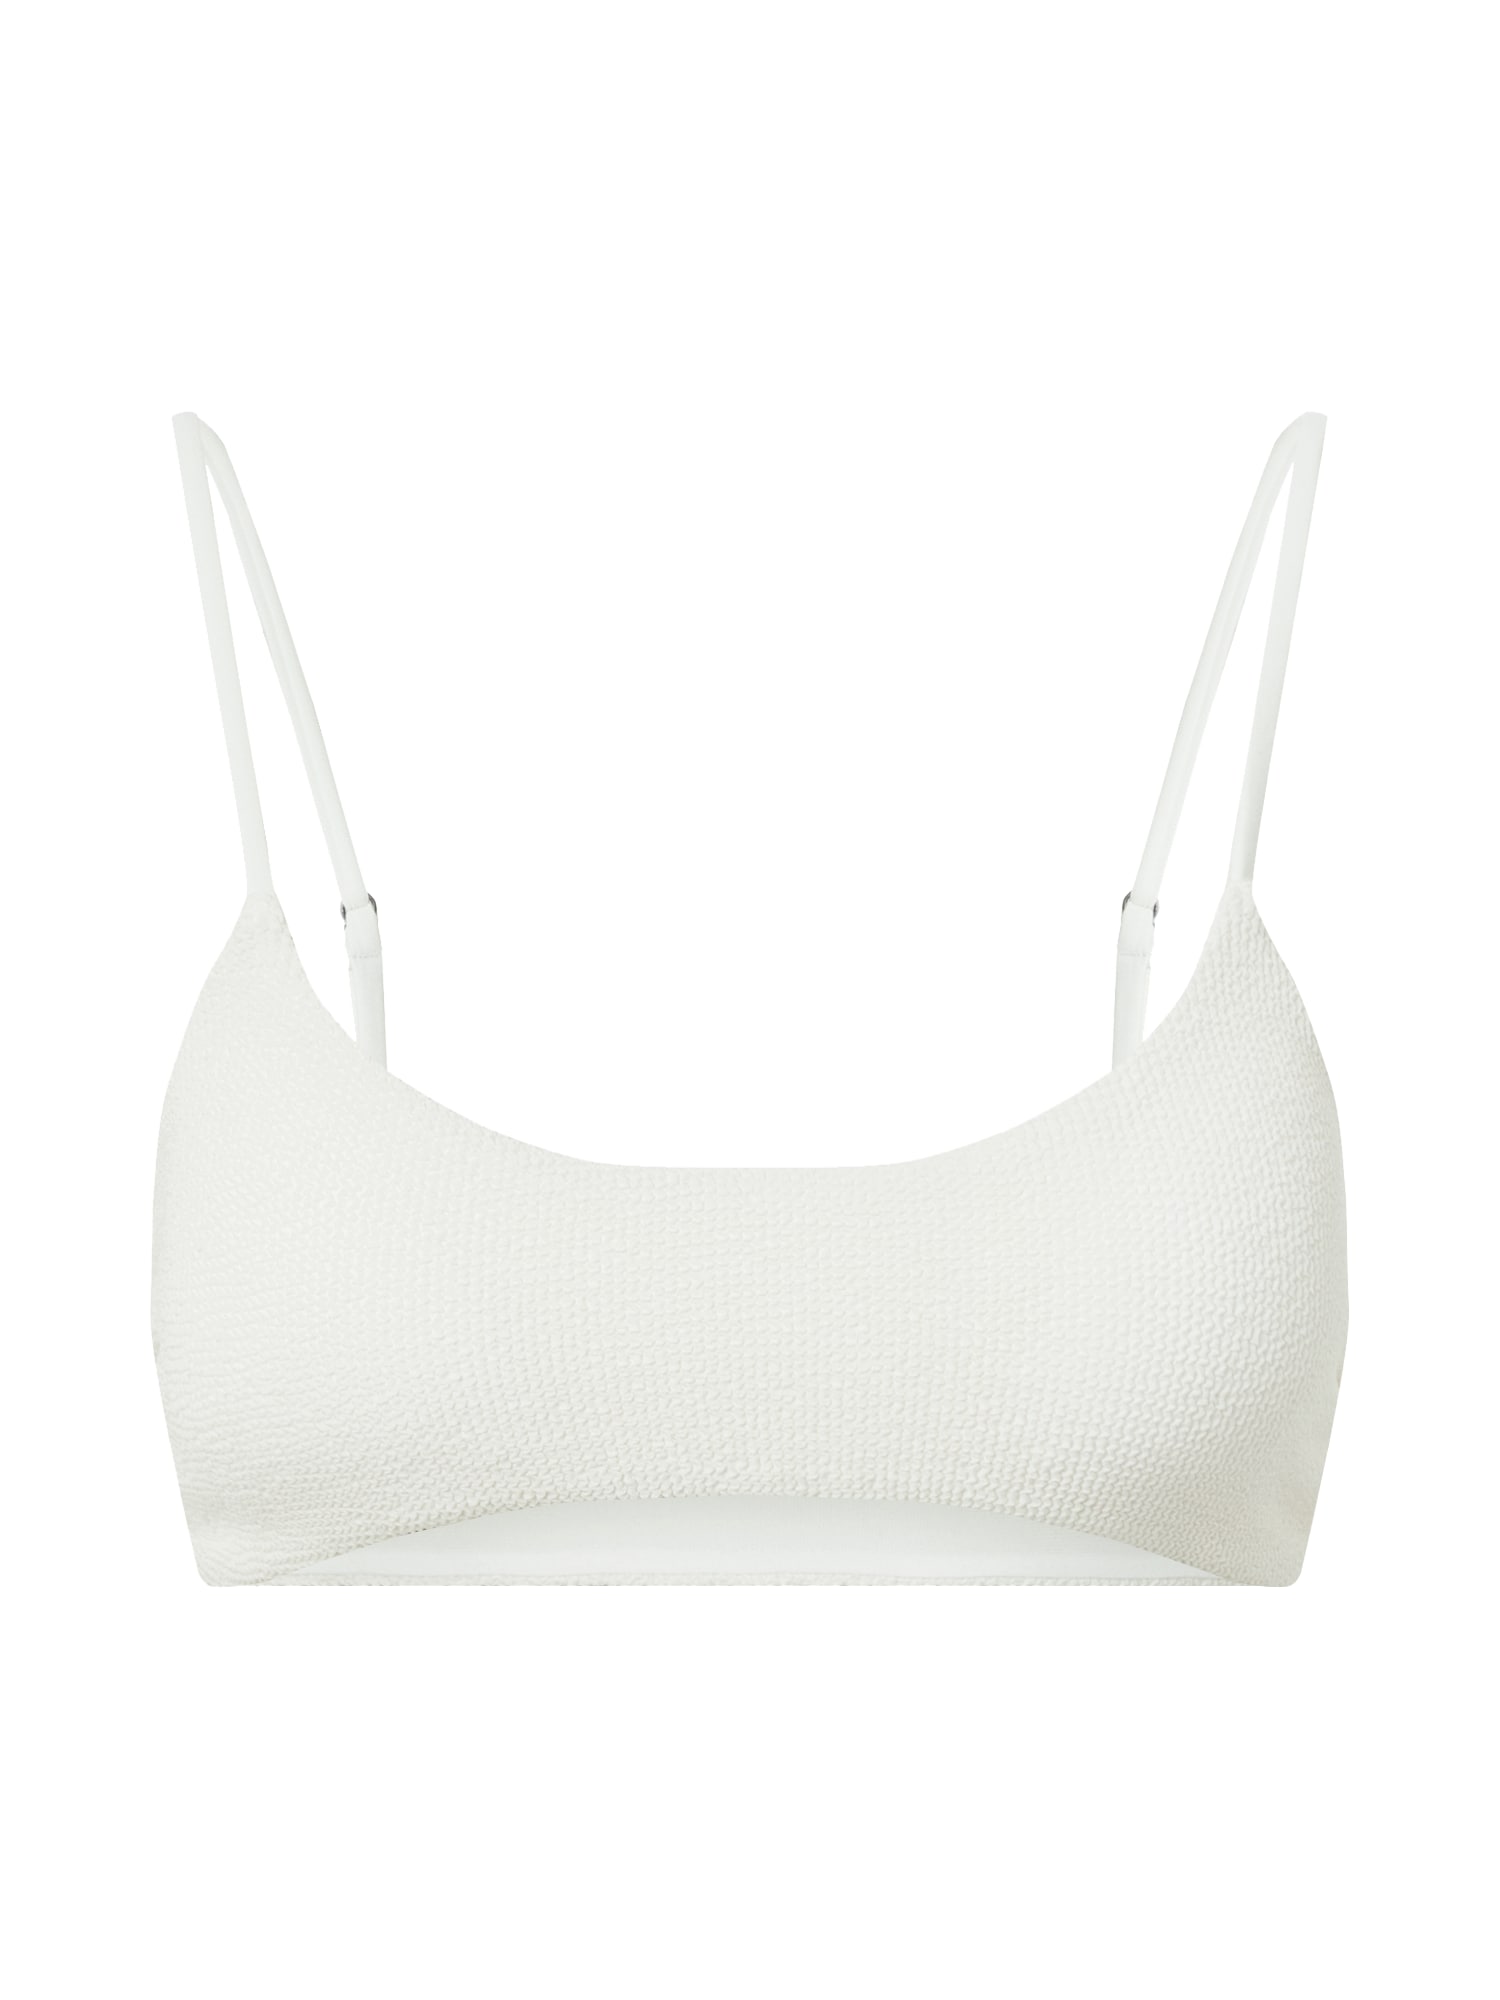 EDITED Top per bikini 'Adelaide' Beige, Bianco